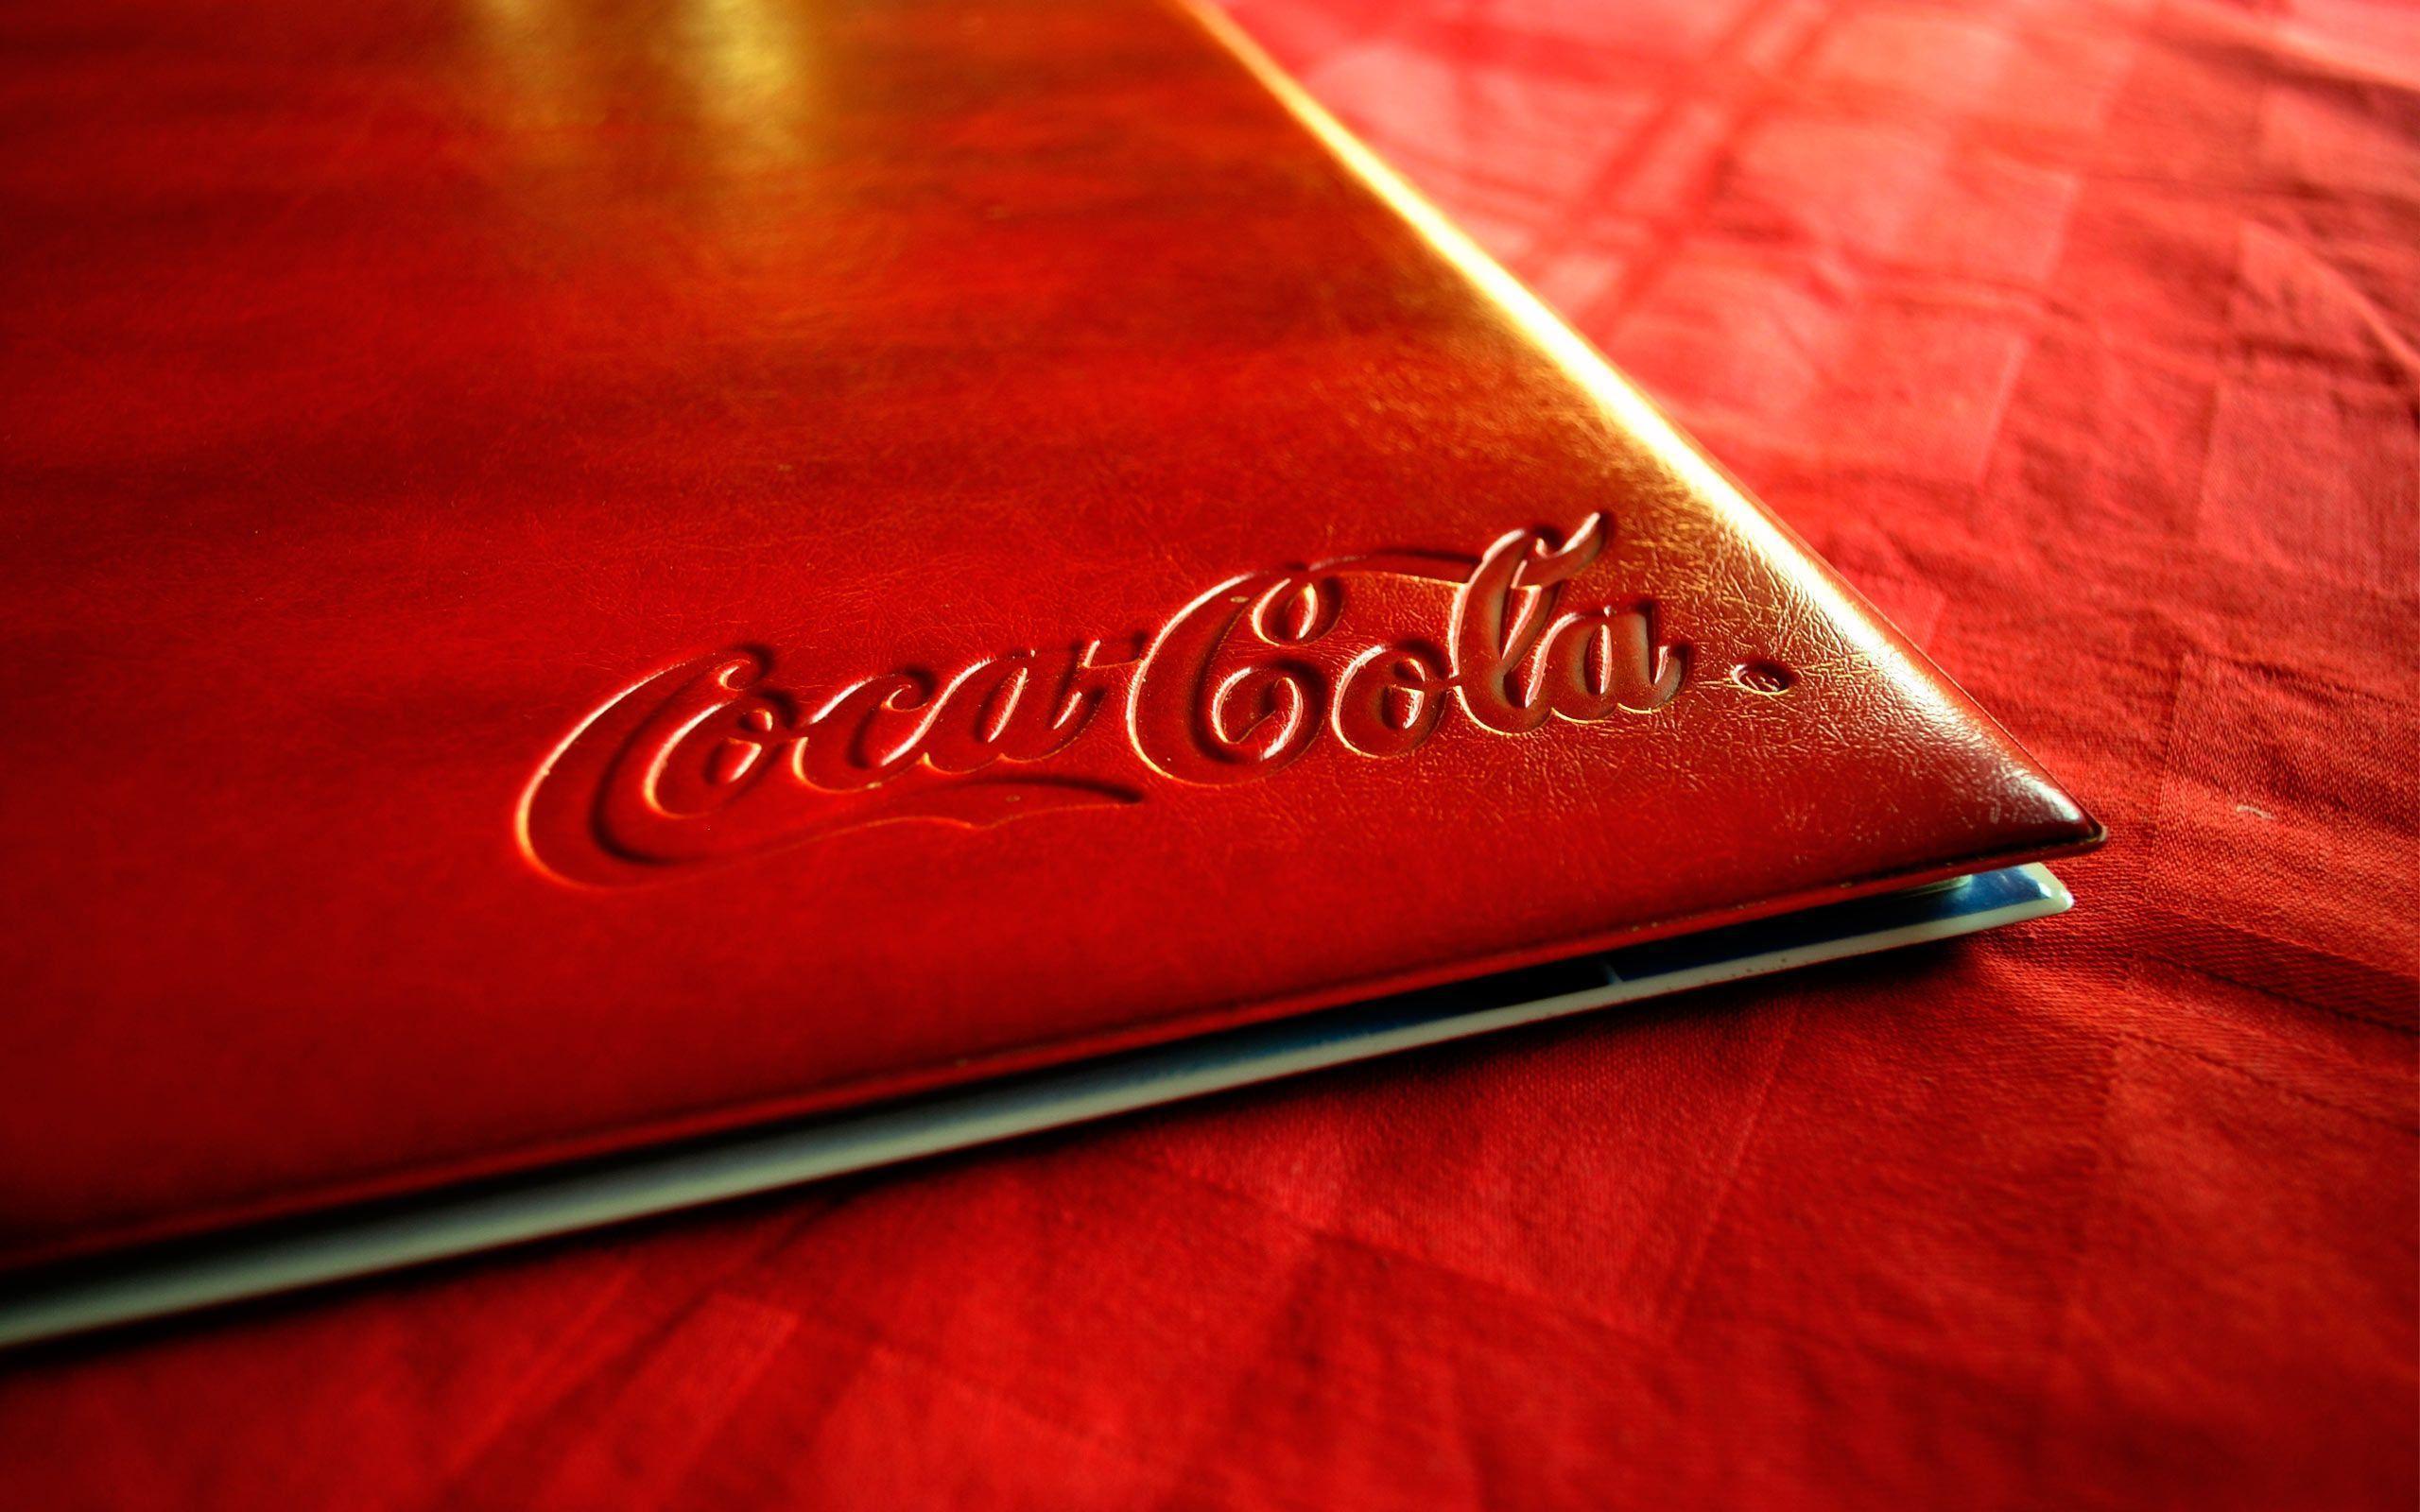 Coca Cola Wallpaper 25 20250 Image HD Wallpaper. Wallpaper